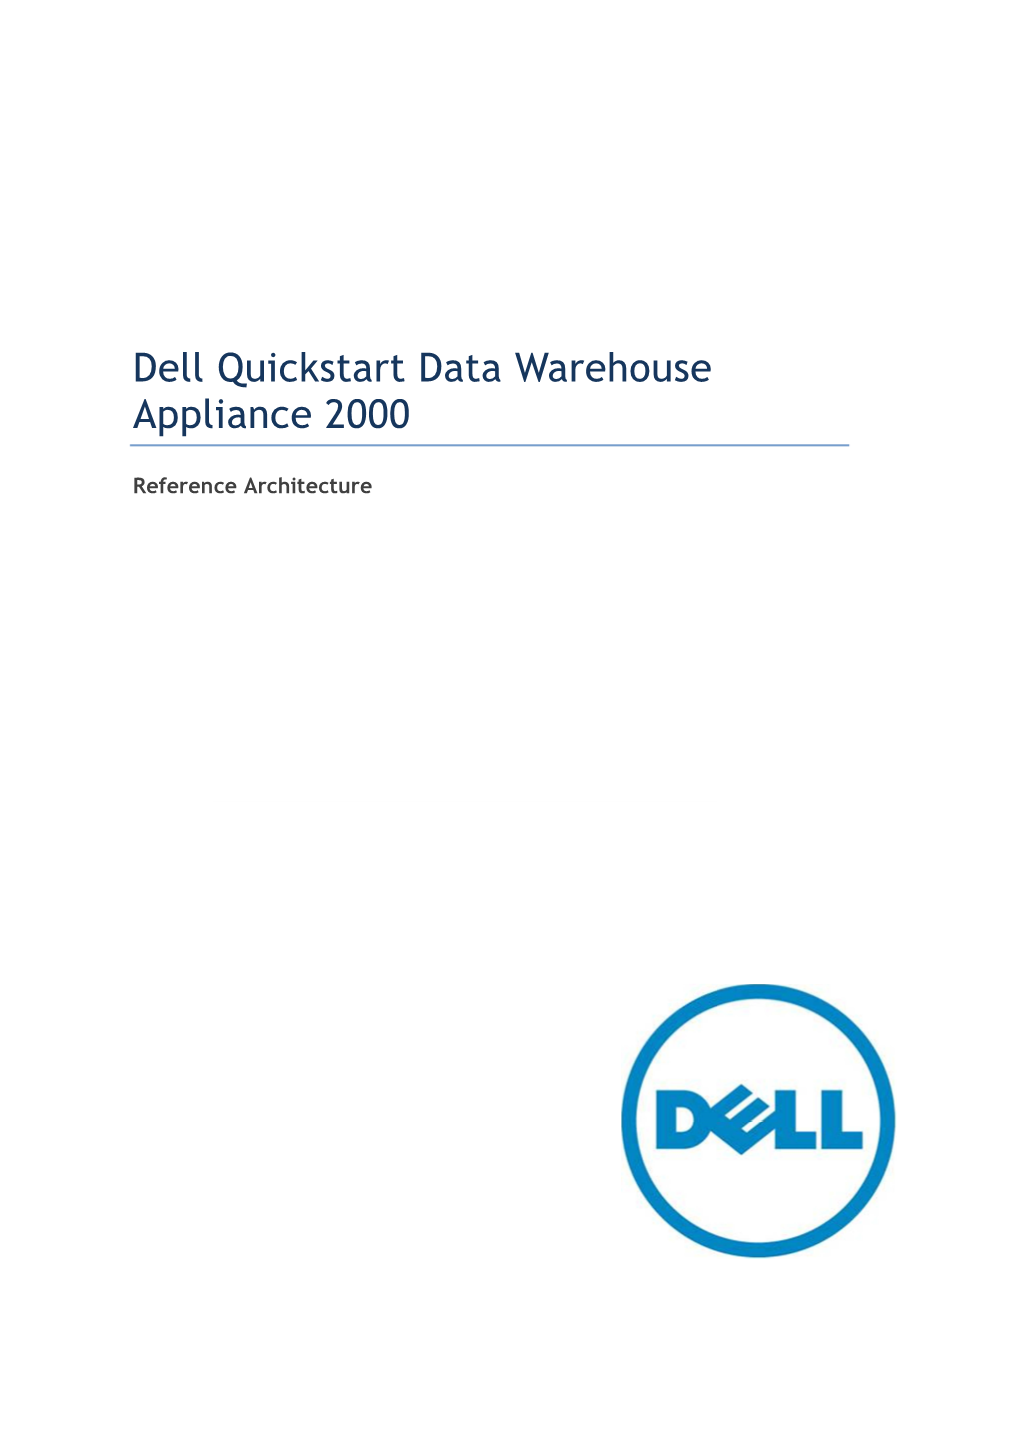 Dell Quickstart Data Warehouse Appliance 2000